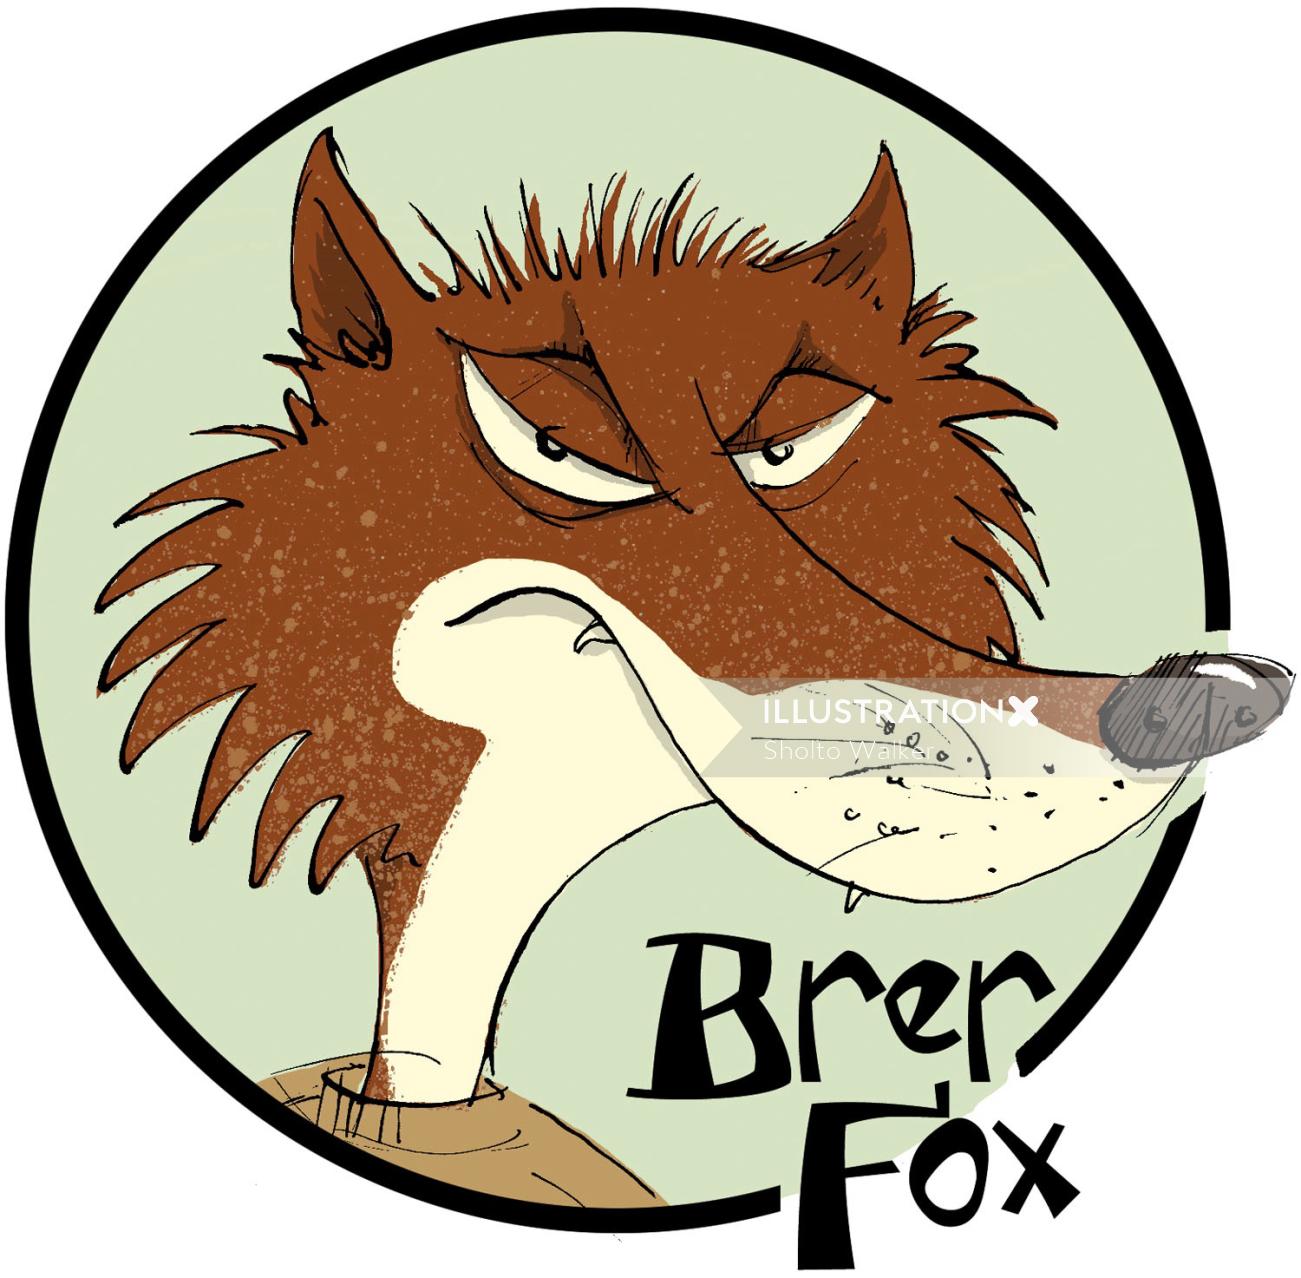 Cartoony Style Illustration of Brer Fox